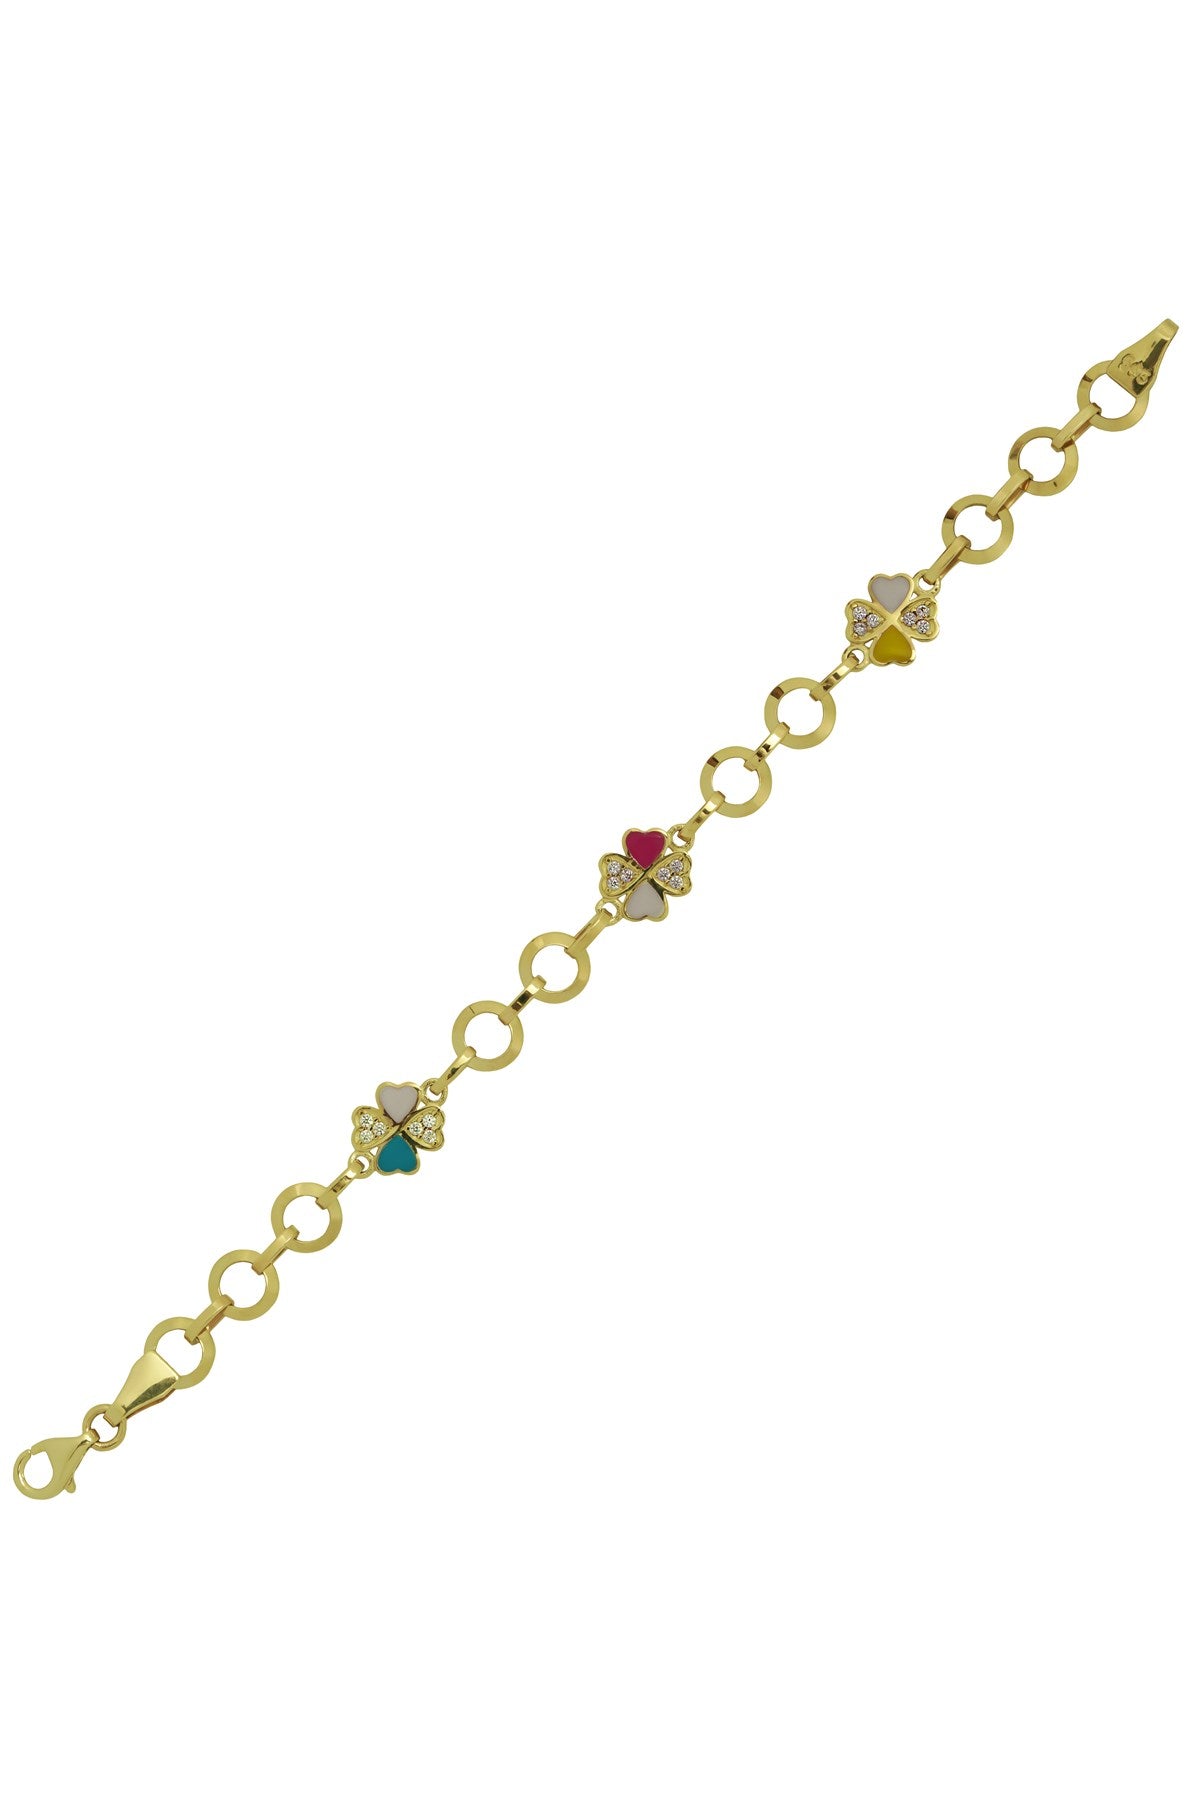 Solid Gold Ring Chain Enamel Clover Baby & Children Bracelet